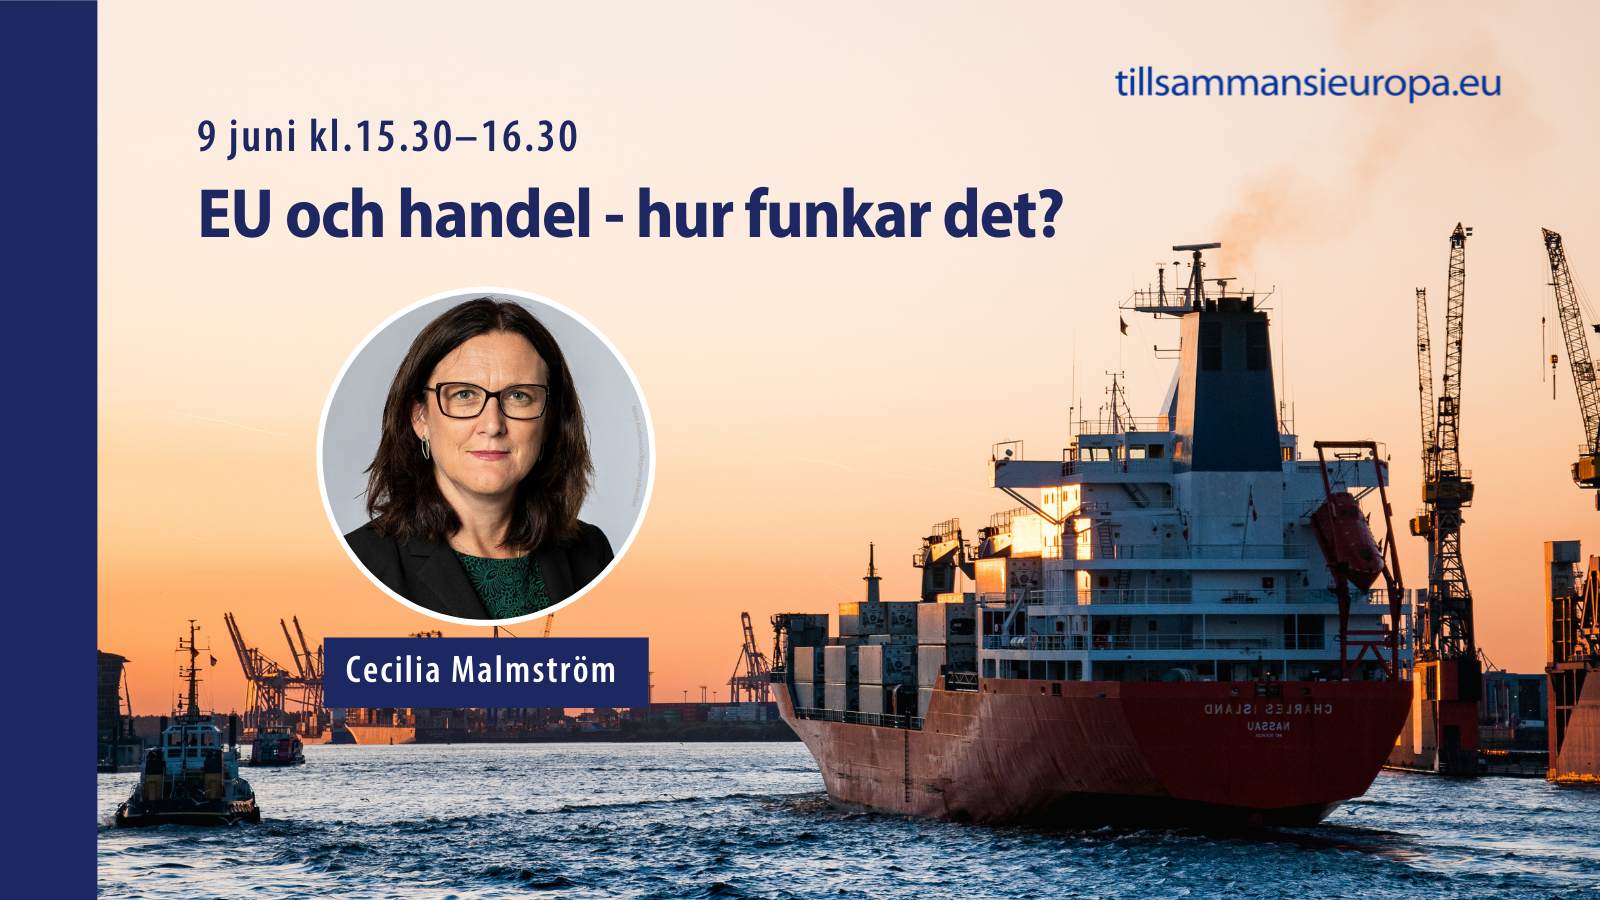 EU och handel - hur funkar det? Samtala med Cecilia Malmström, tidigare EU-kommissionär med ansvar för handelsfrågor